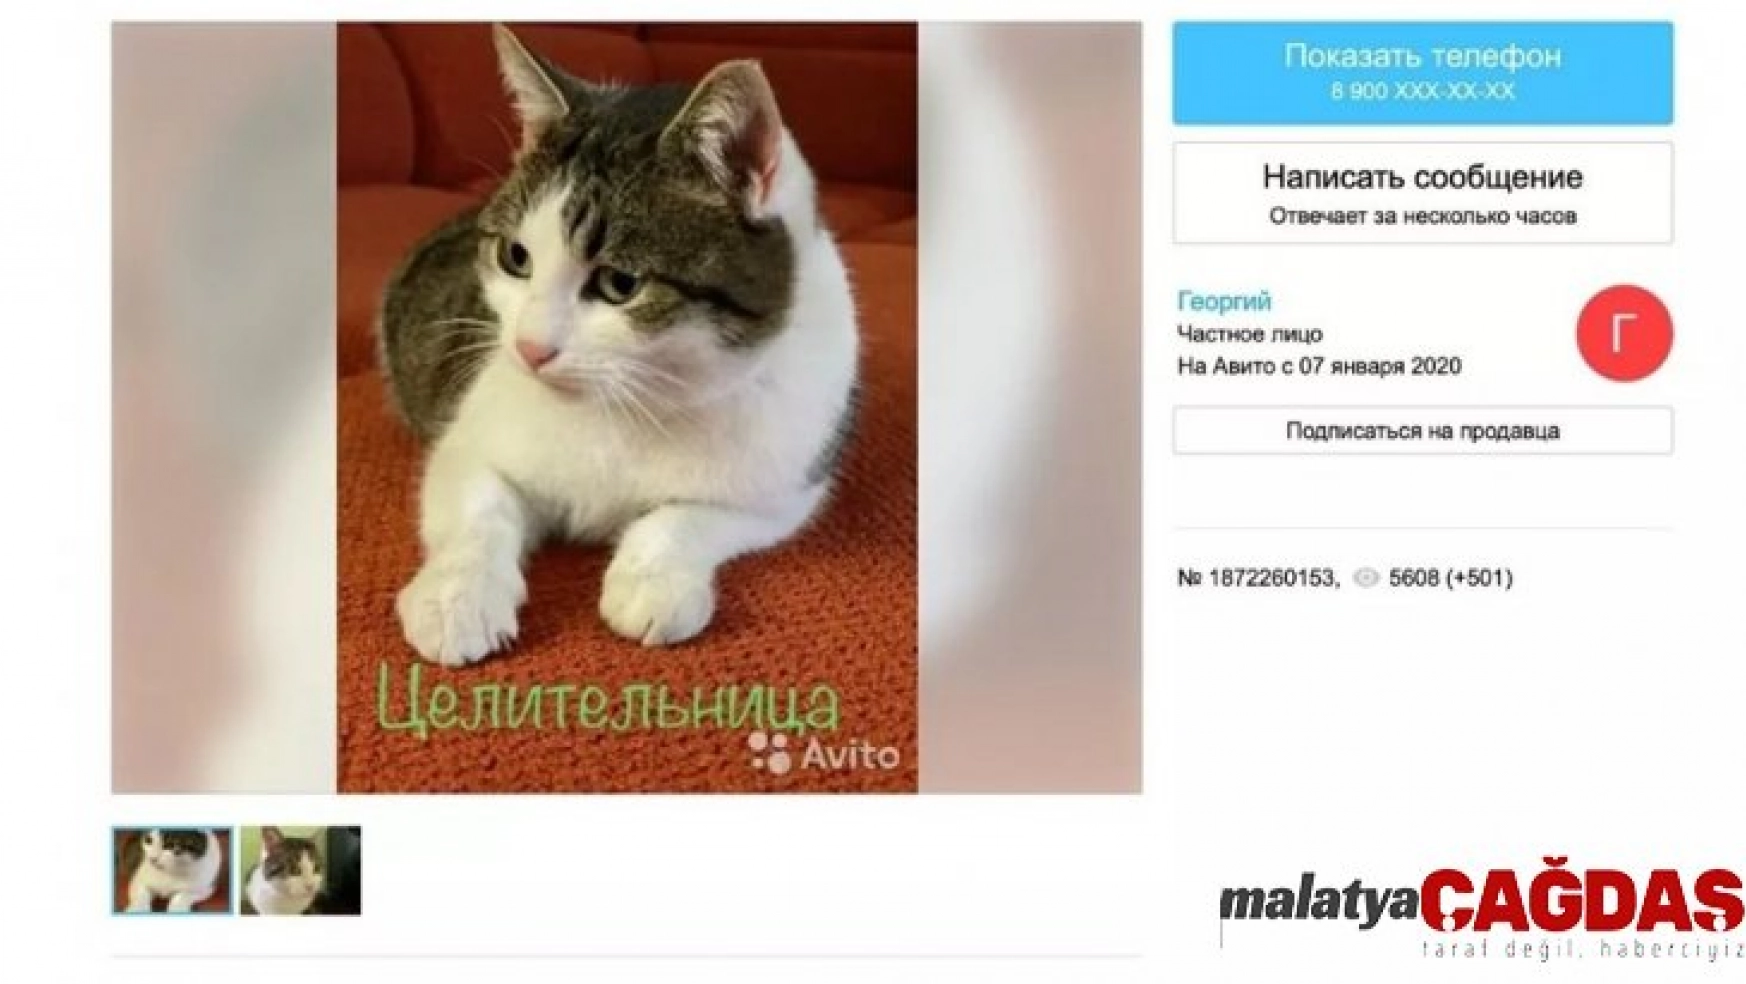 Rus kedisi 320 bin dolara satışa çıkarıldı